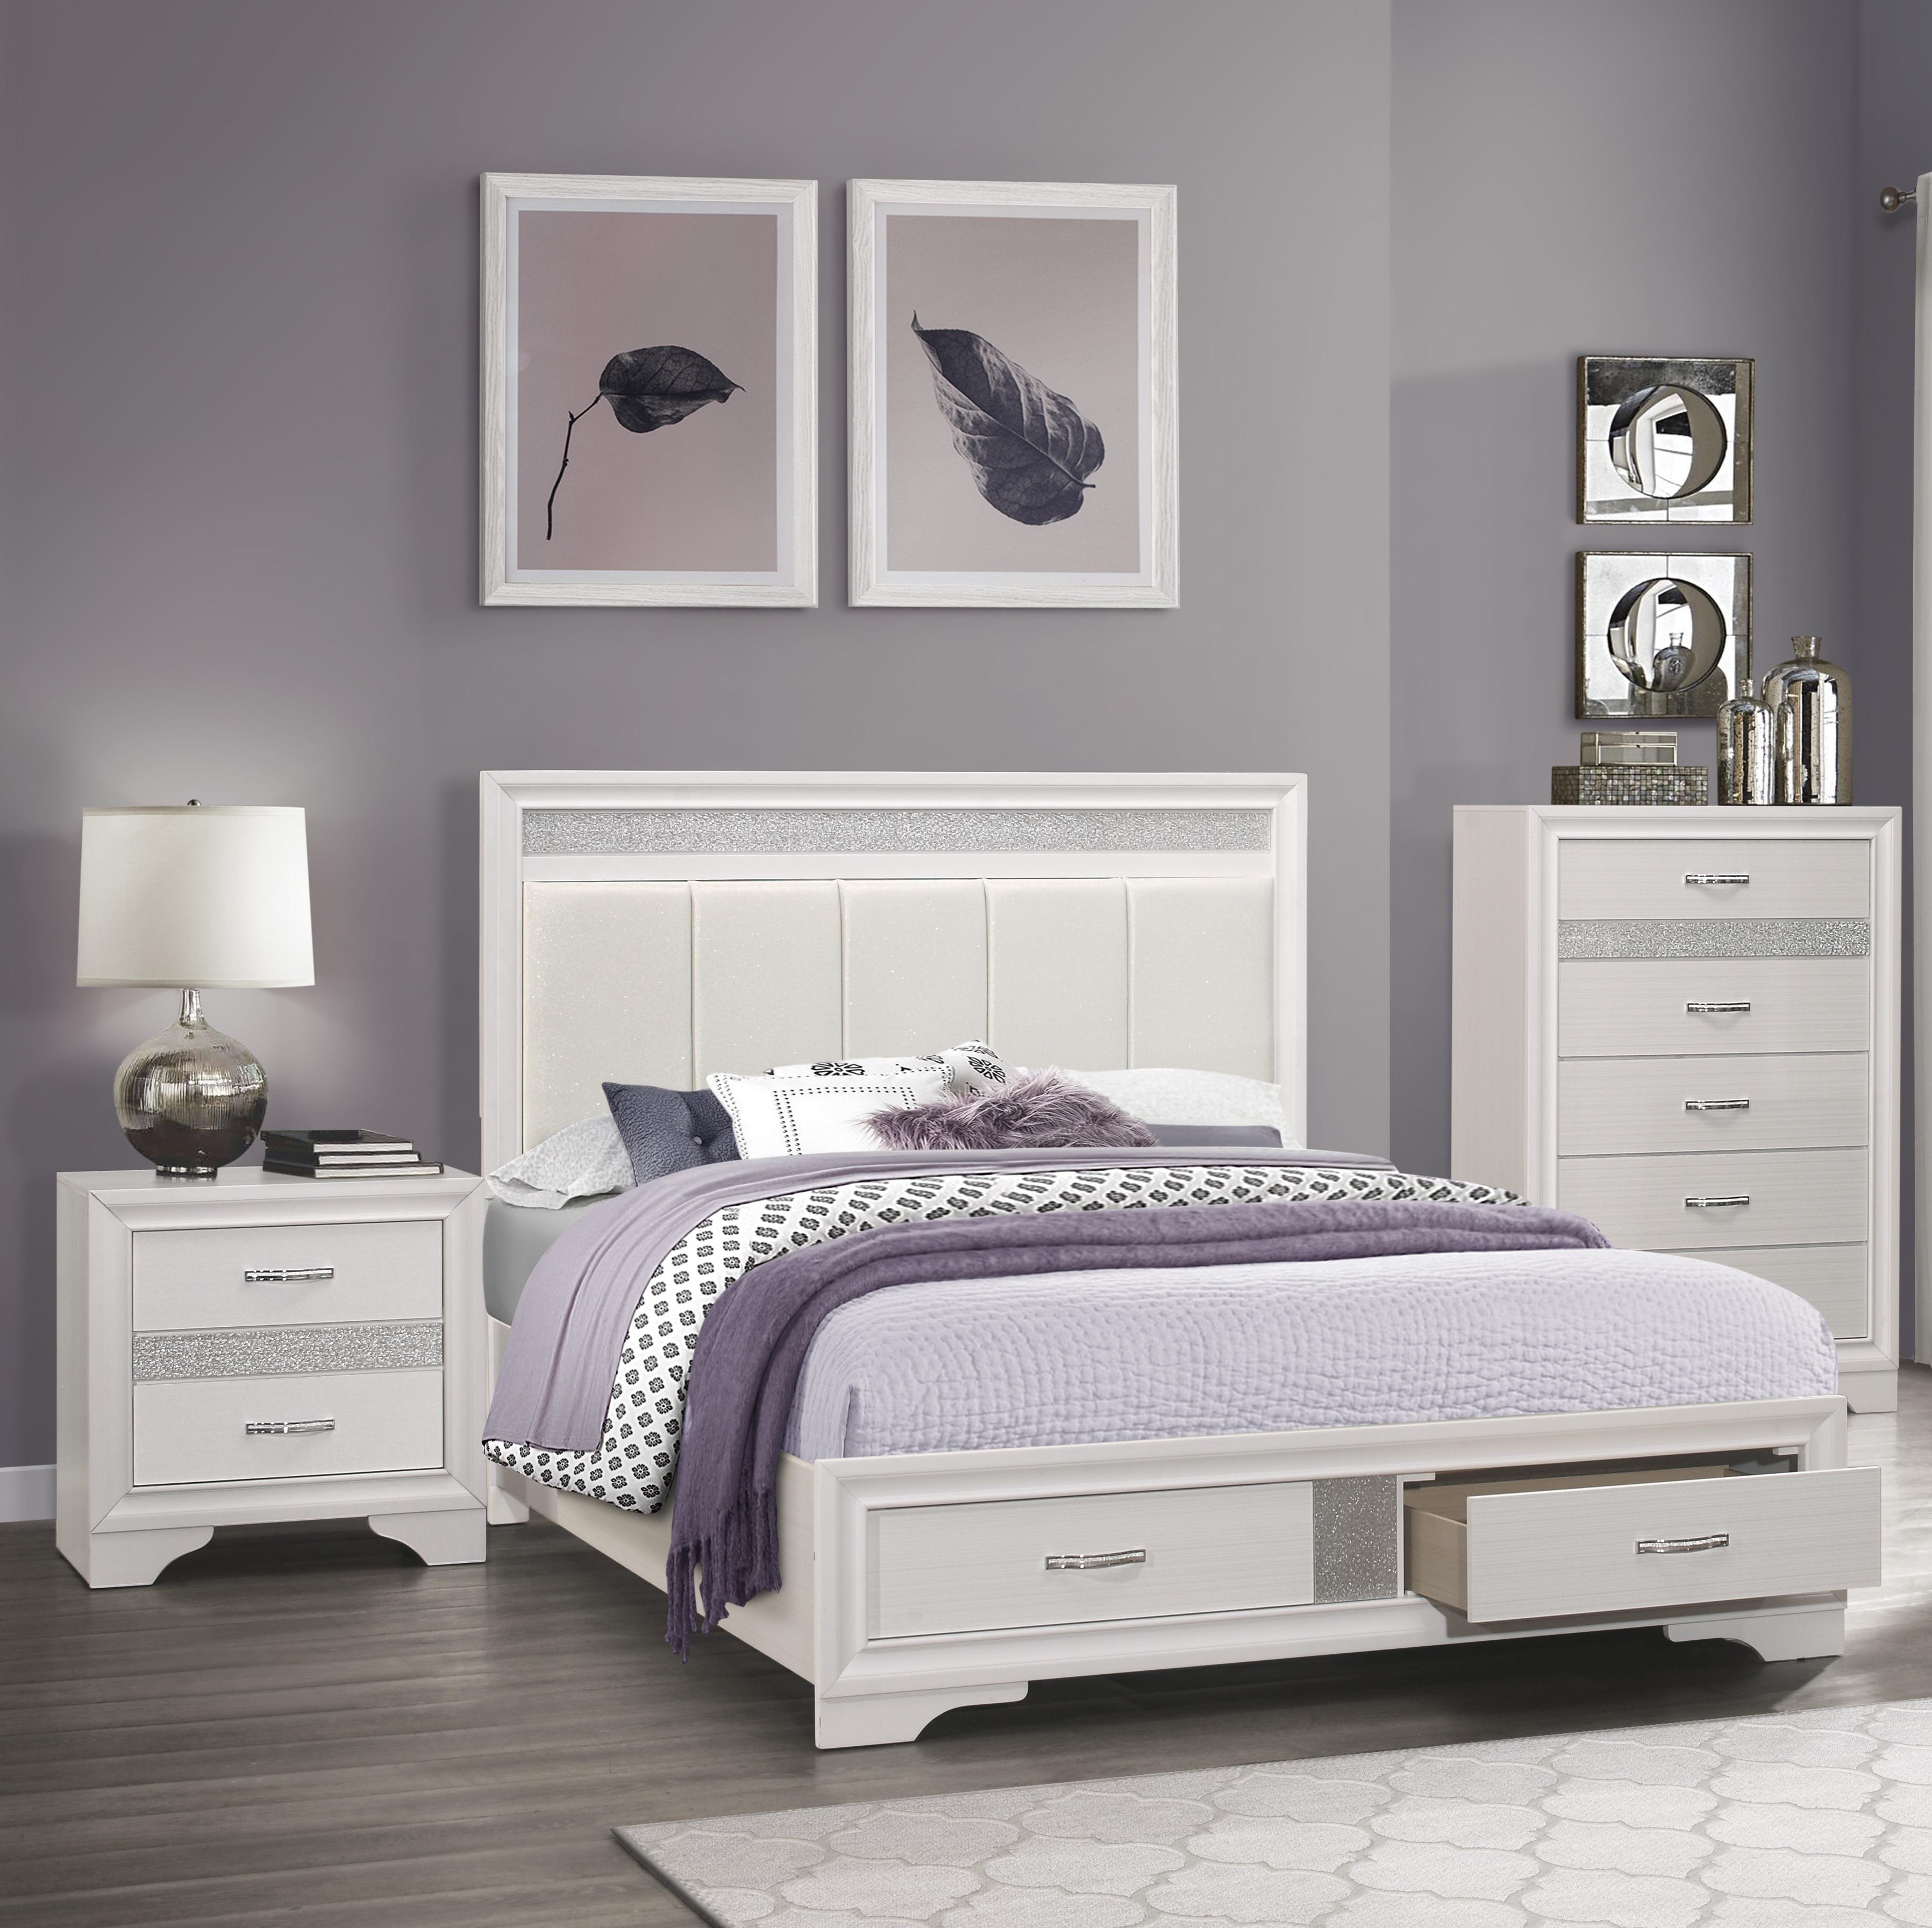 

    
Glam White & Silver Glitter Wood CAL Bedroom Set 3pcs Homelegance 1505WK-1CK* Luster
